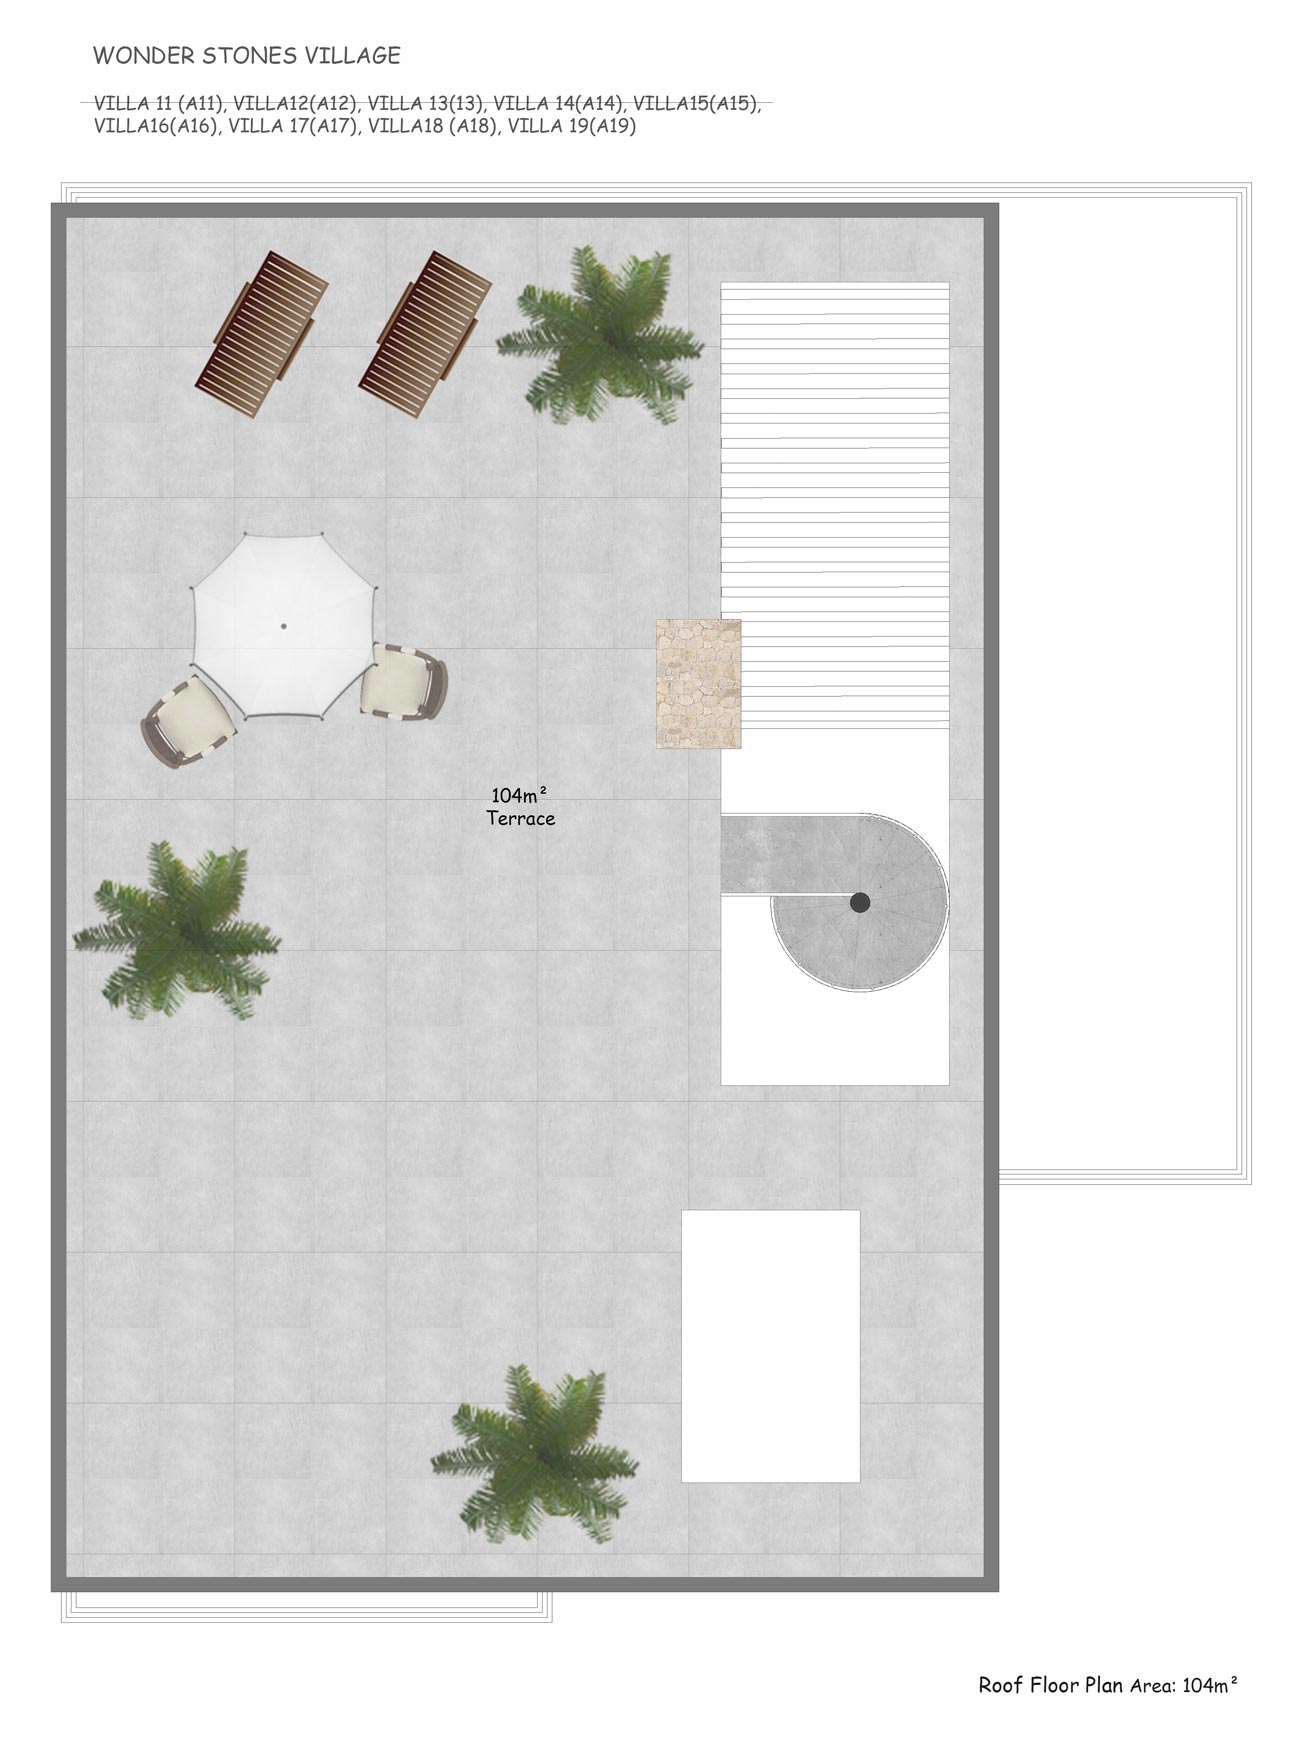 Floor Plan - 3 bedroom villa / roof terrace